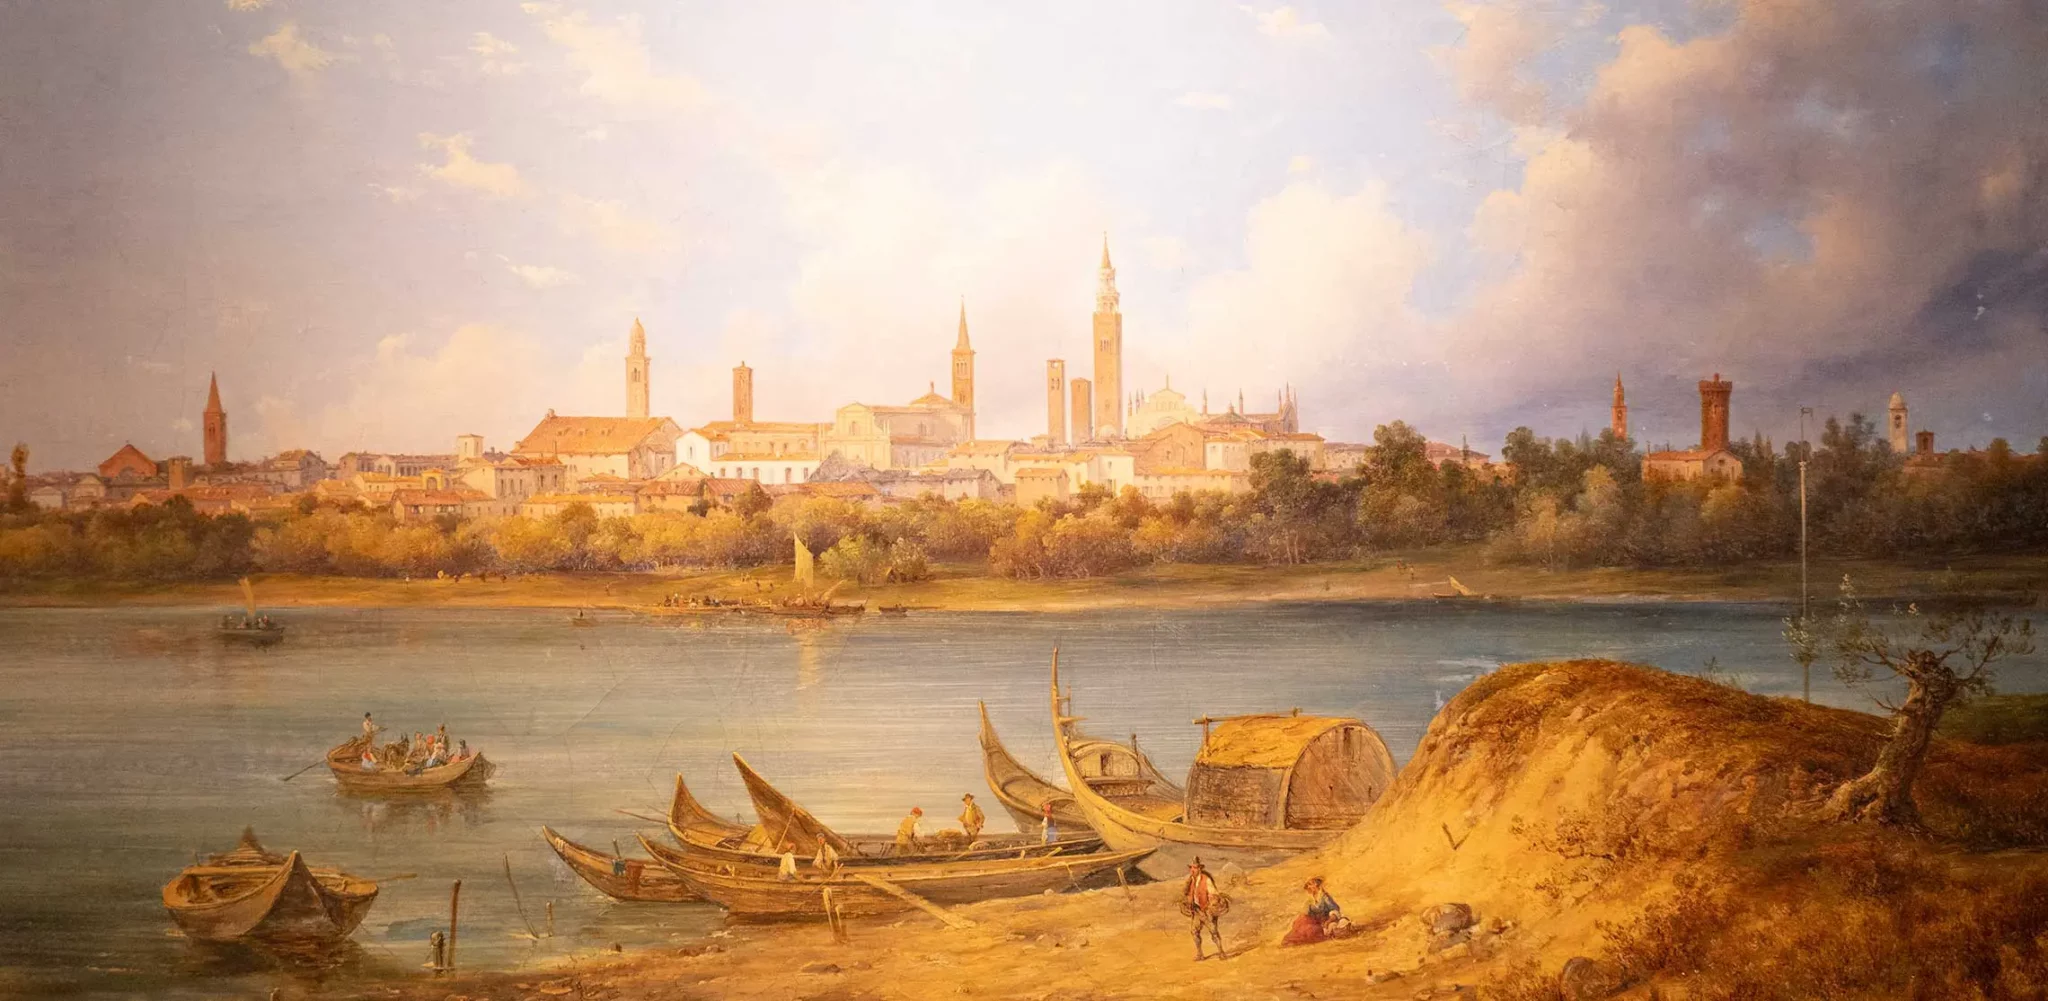 Gemälde mit dem Panorama der Stadt Cremona am Po in Italien.